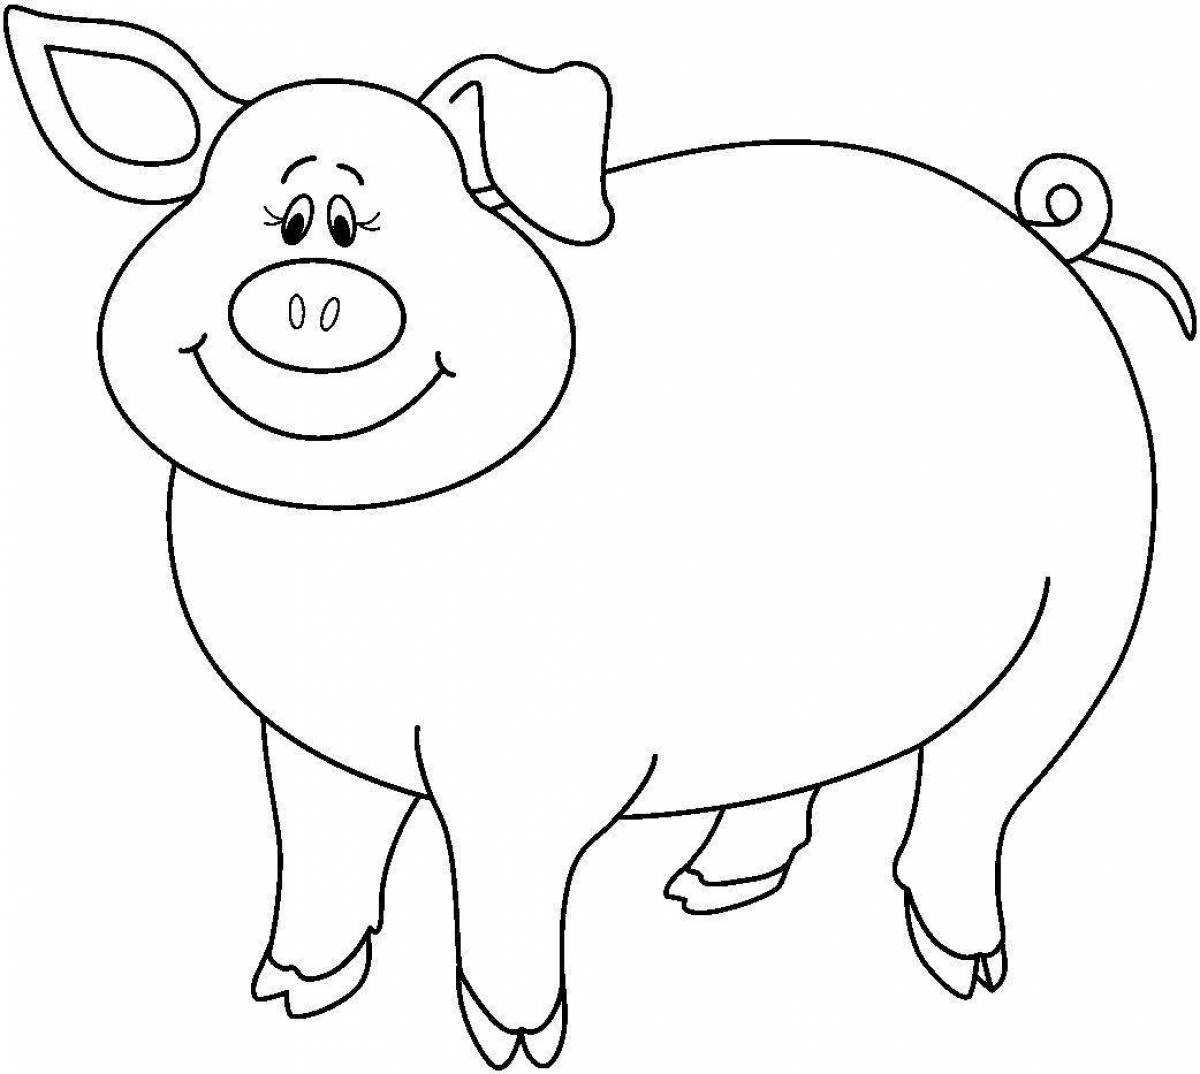 Восхитительная раскраска свинья для детей